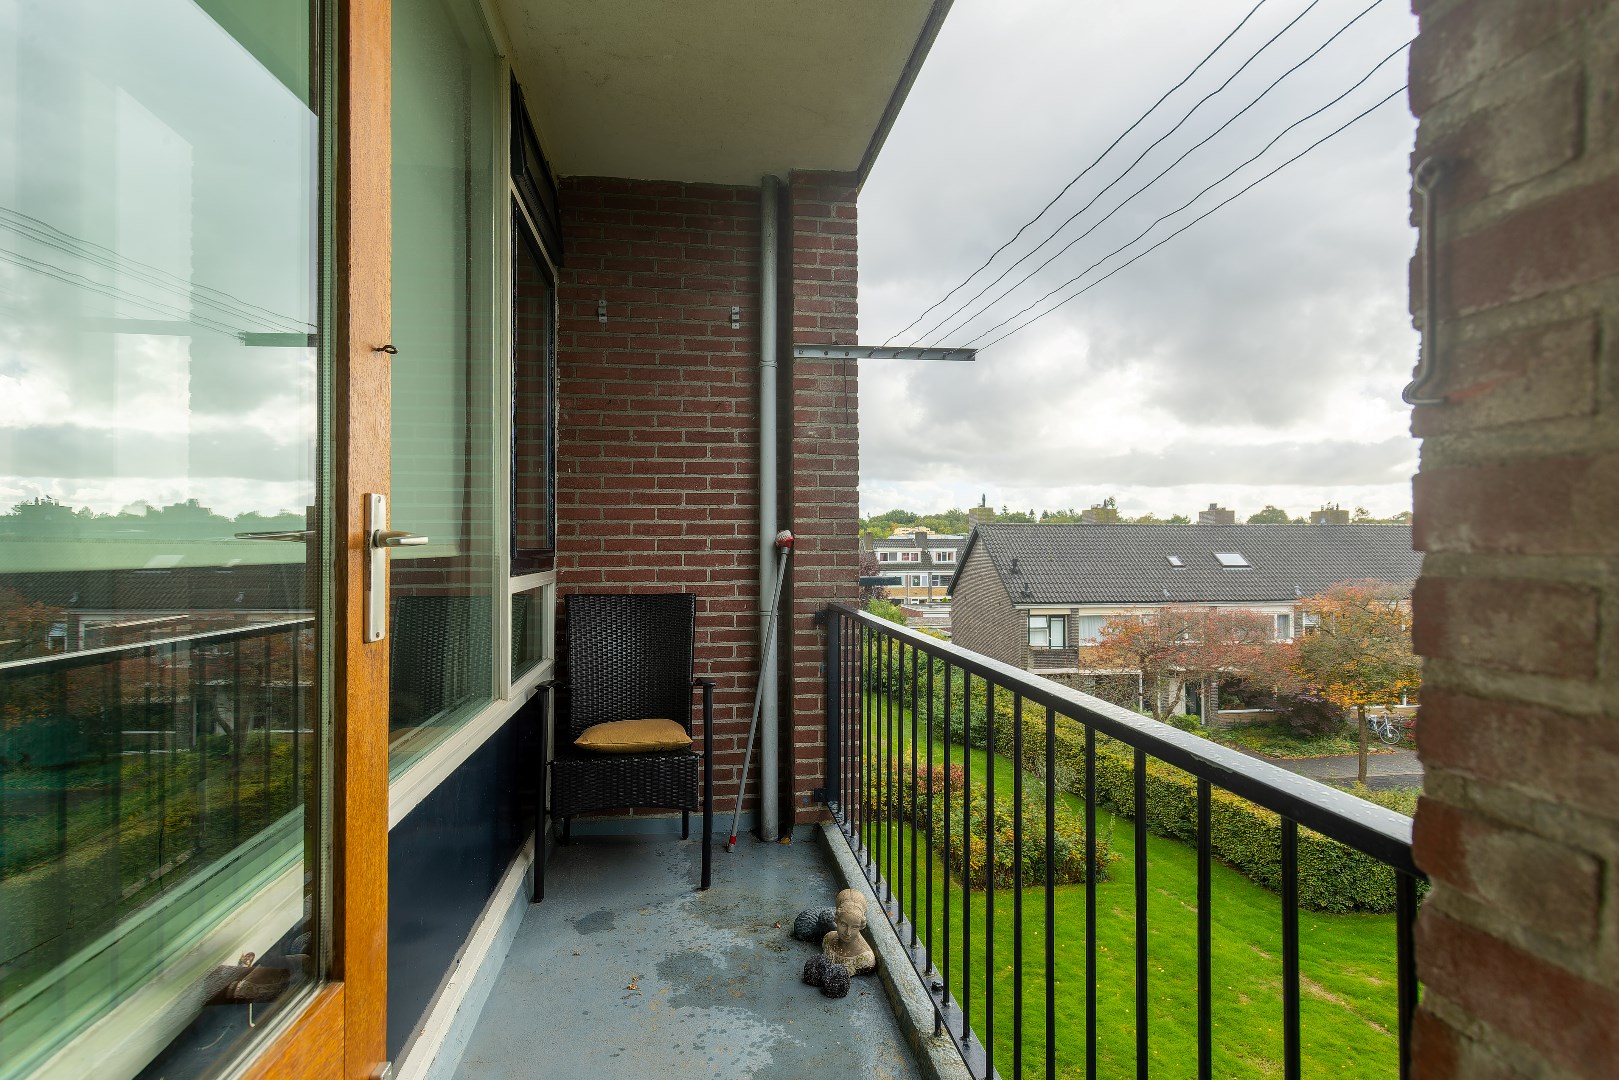 Nu te koop! Sfeervol hoekappartement op de 2e verdieping met vrij uitzicht welke is gelegen in de populaire wijk Helpman van Groningen. 